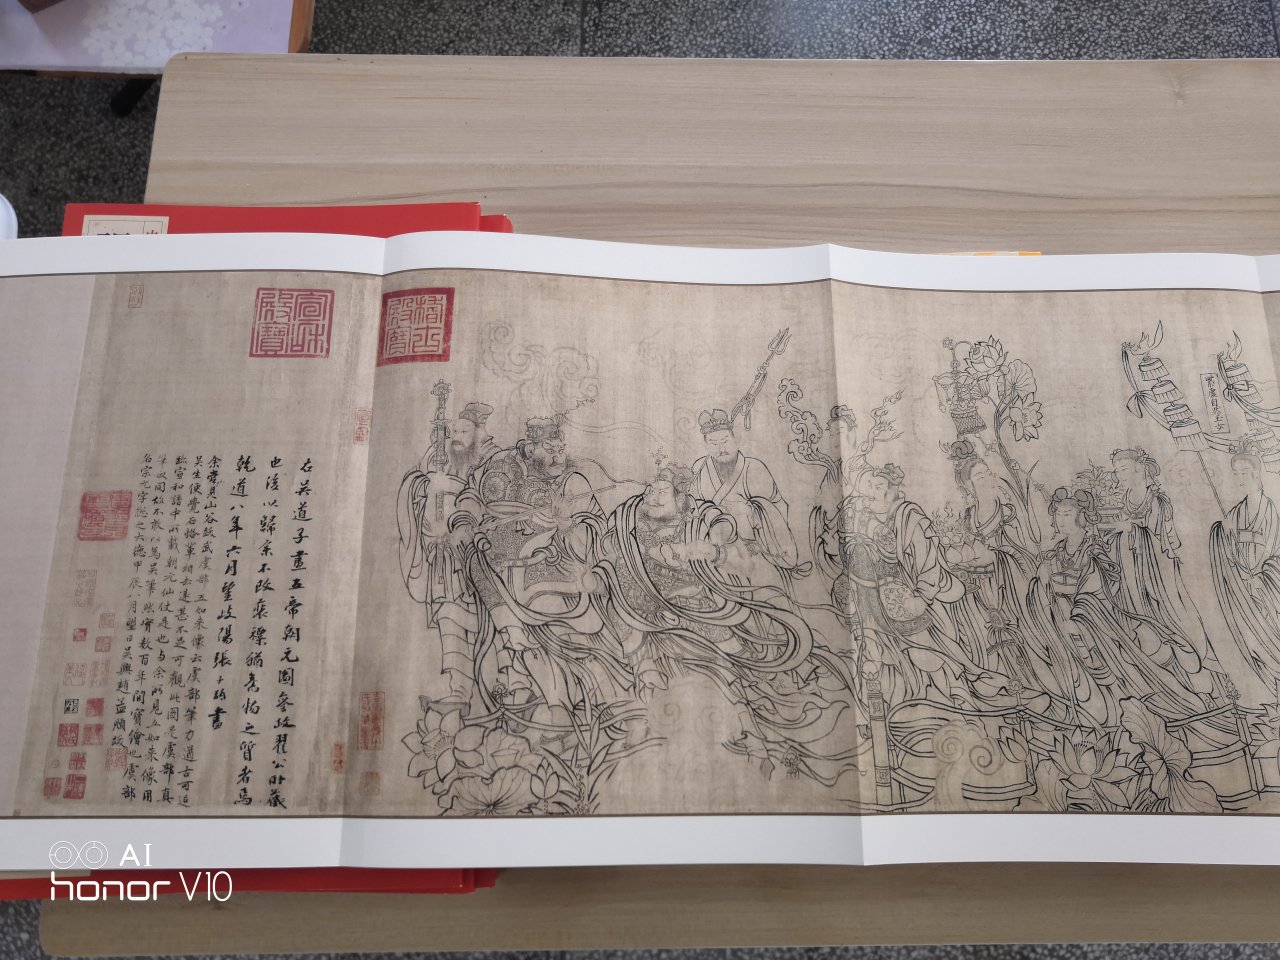 上海書畫出版社這套書 裝幀設計上檔次 印刷精美 紙質優良 版本權威 令人愛不釋手